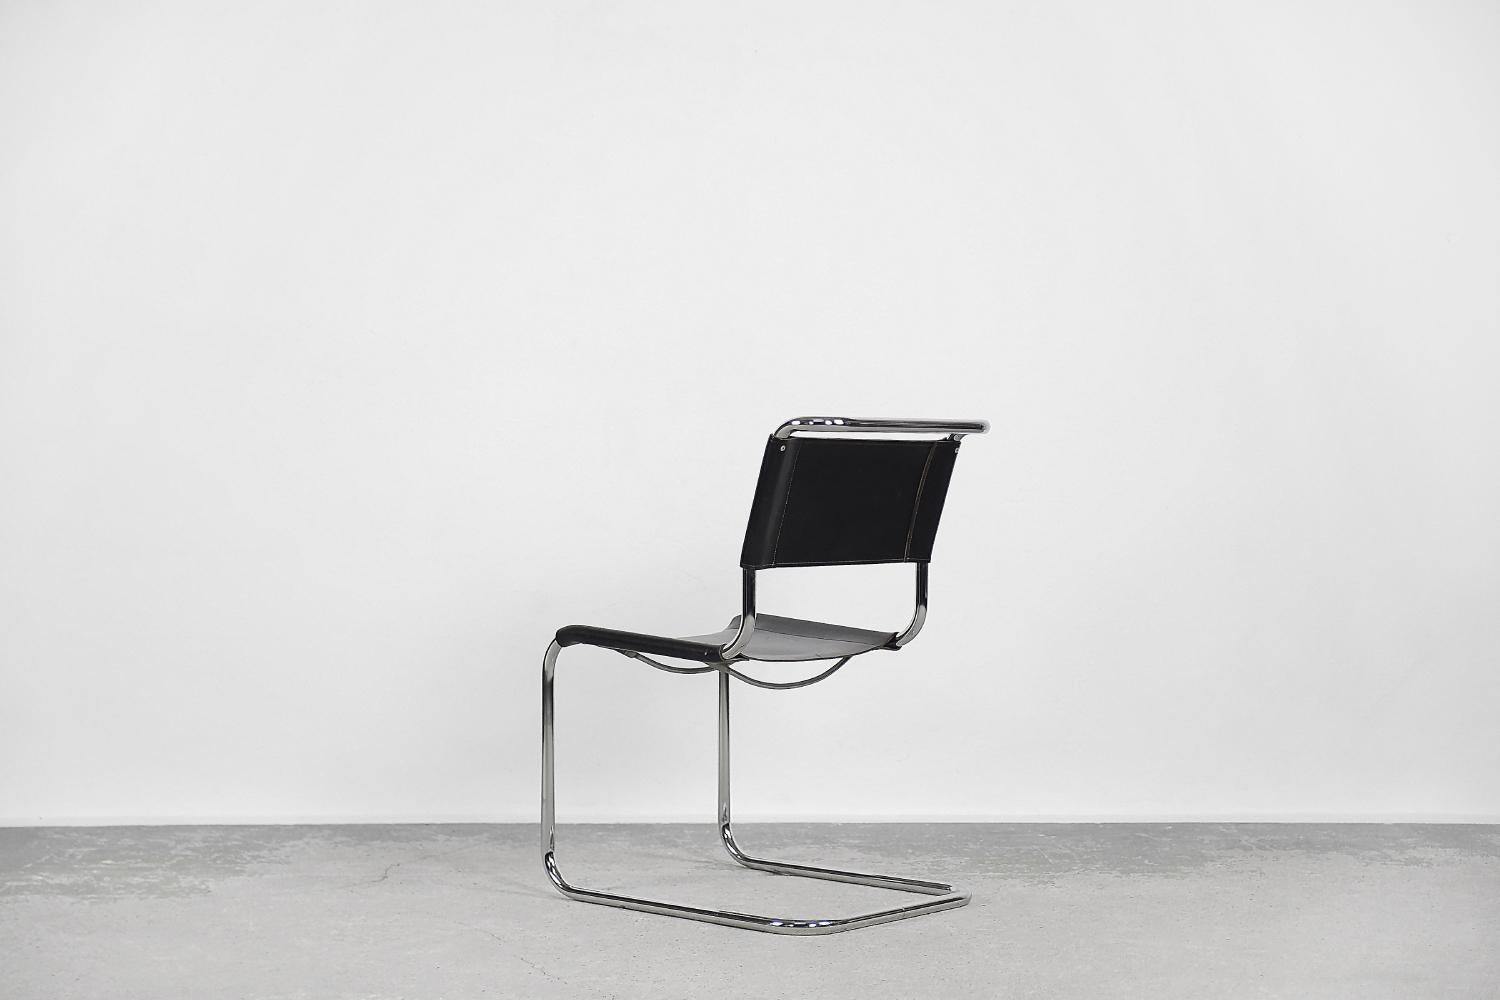 La chaise S33 de Mart Stam est une icône du design datant de 1926. Il a été produit par la manufacture allemande Thonet. Notre pièce date des années 1960. Il s'agit de la première chaise en porte-à-faux de l'histoire. Mart Stam expérimente avec des